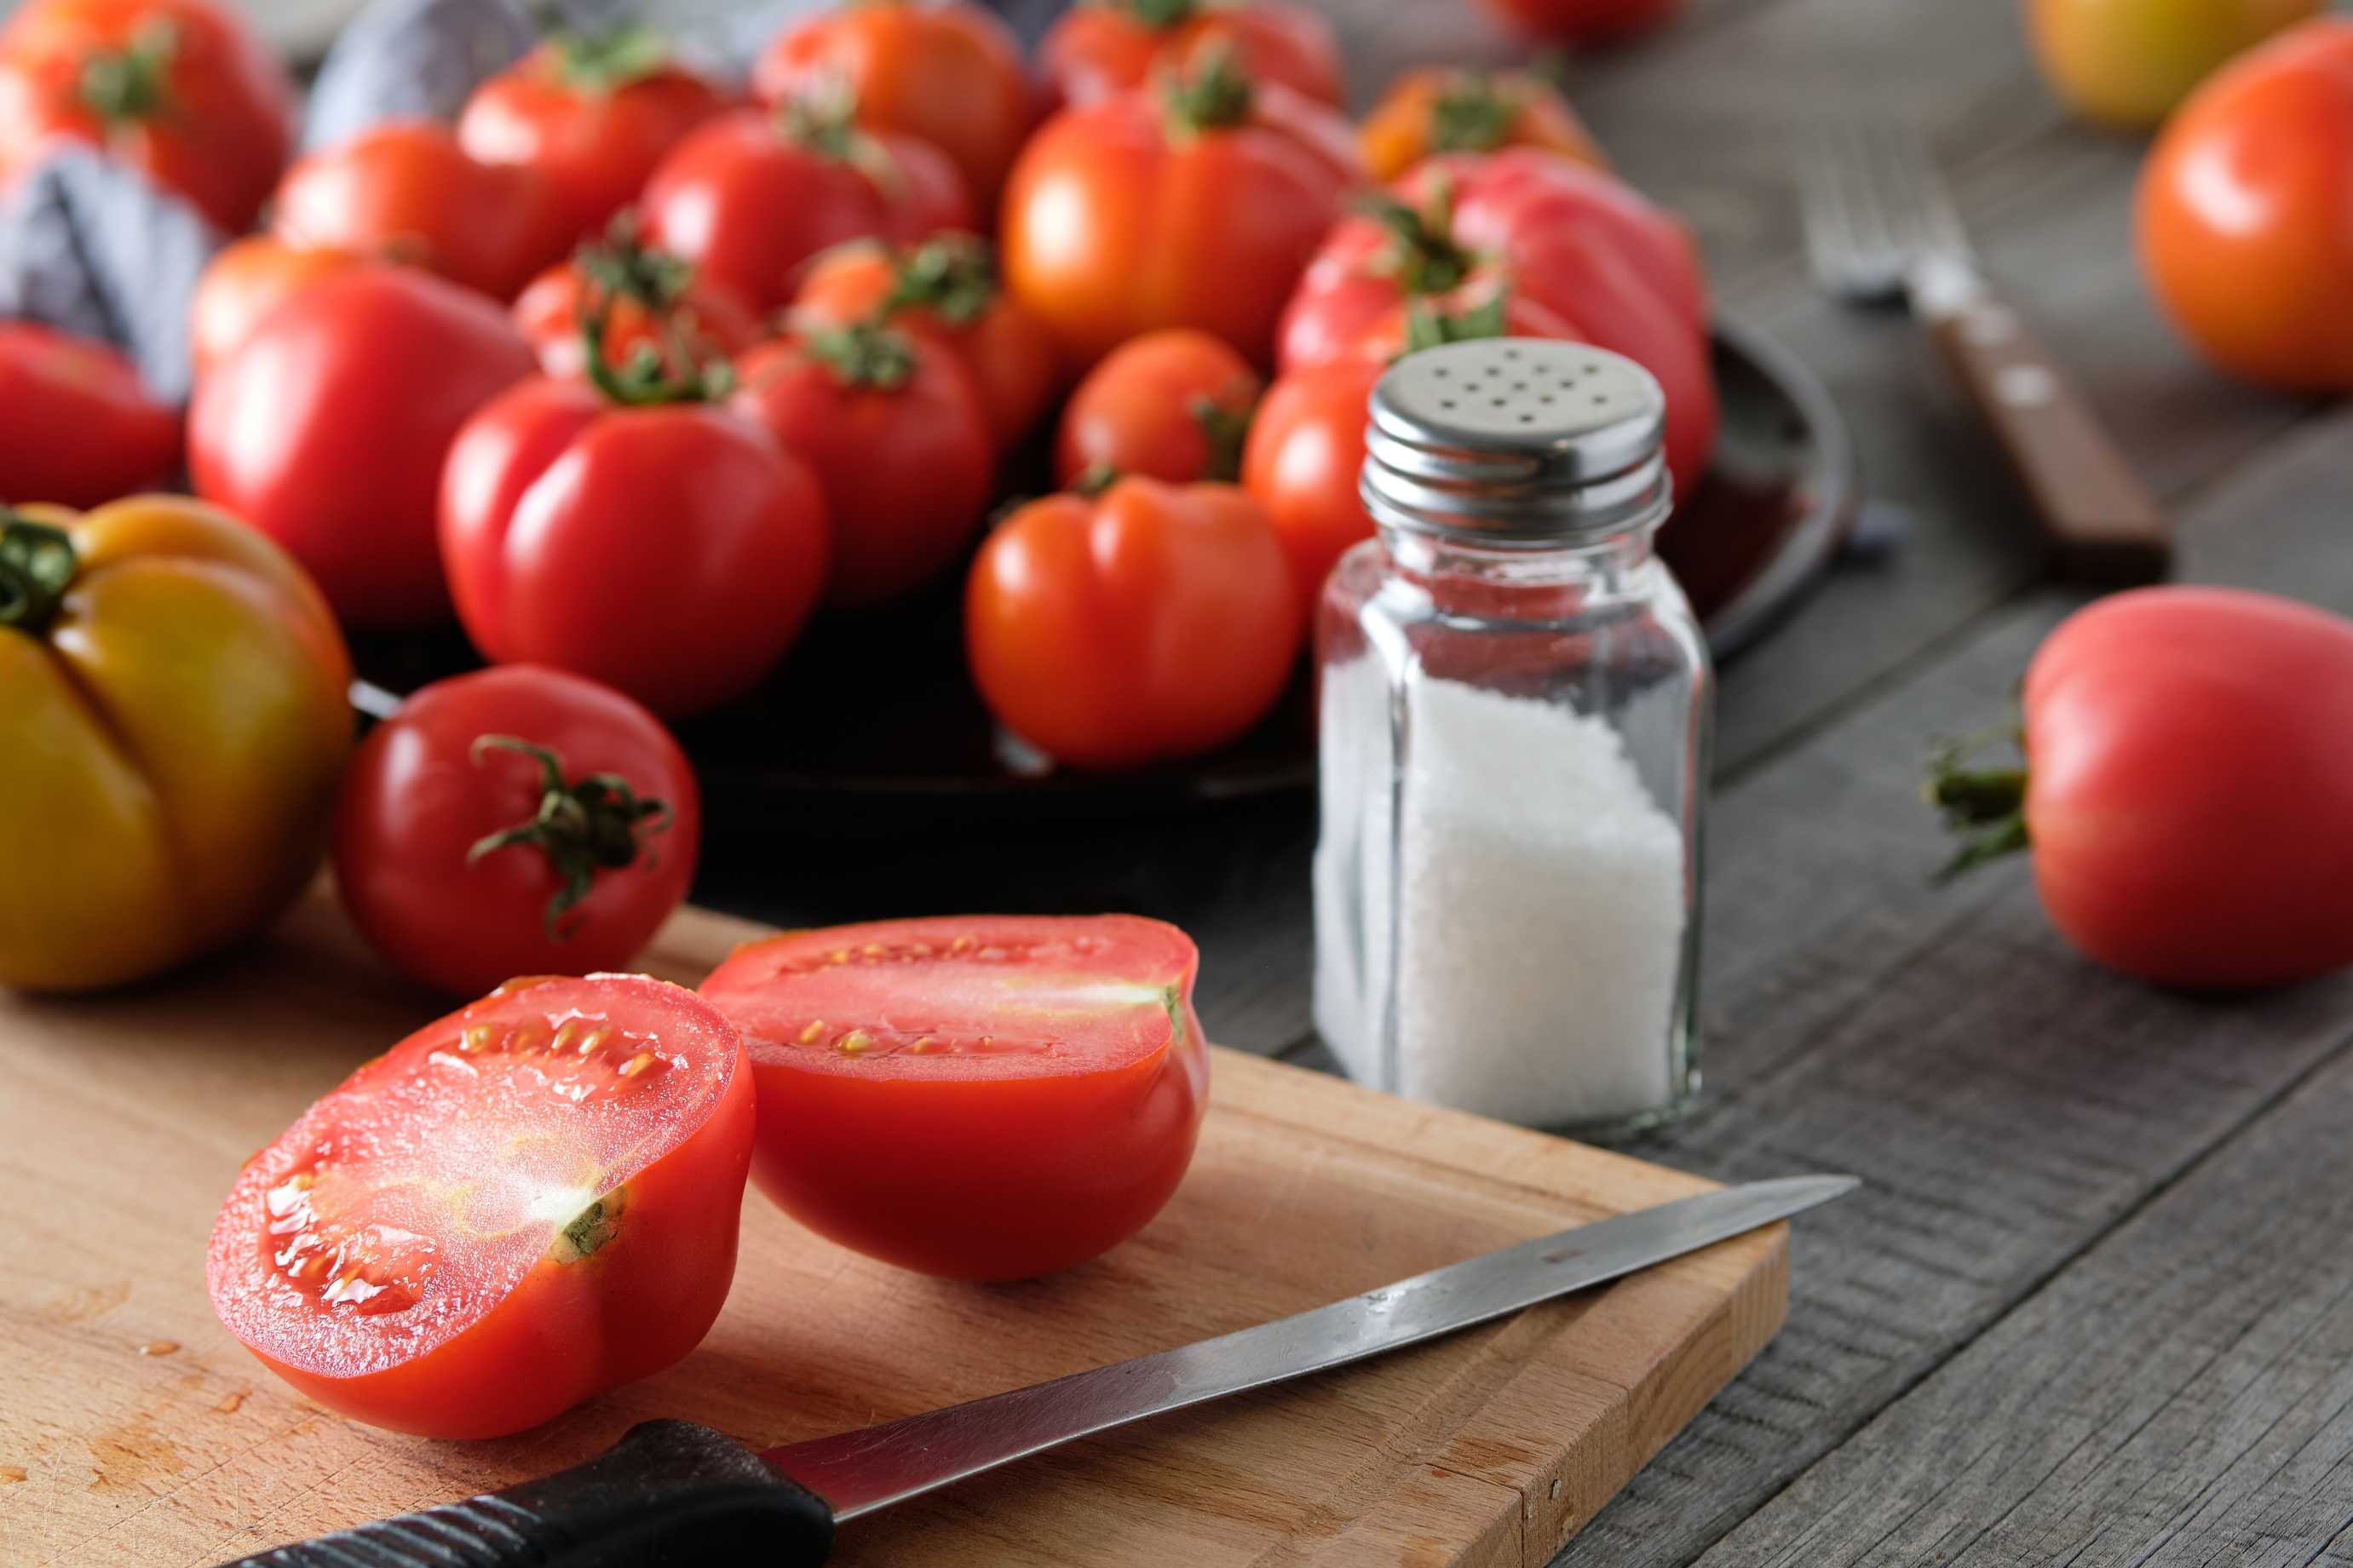 microsoft, tomate: opiniones de profesionales en nutrición, porciones saludables y desventajas